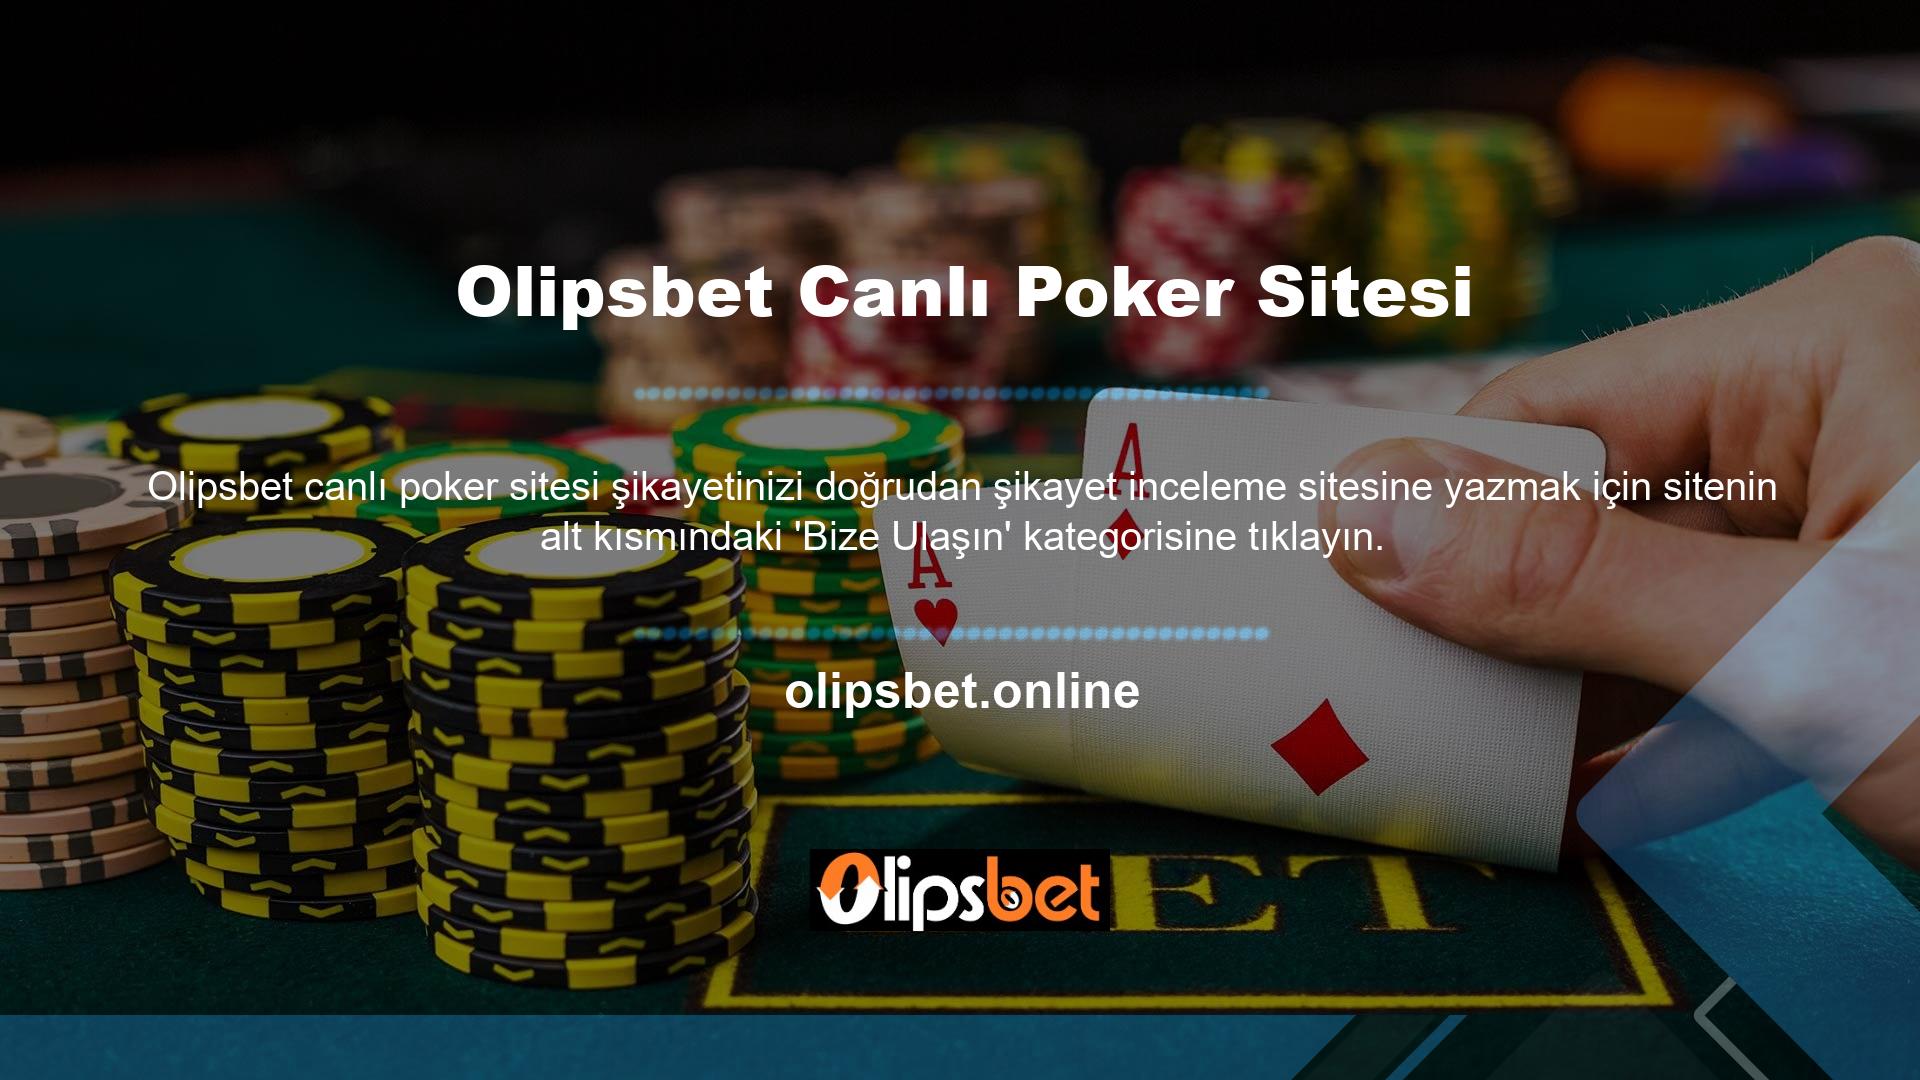 Şikayetler için özel olarak oluşturulmuş bir web sitesi olan Olipsbet